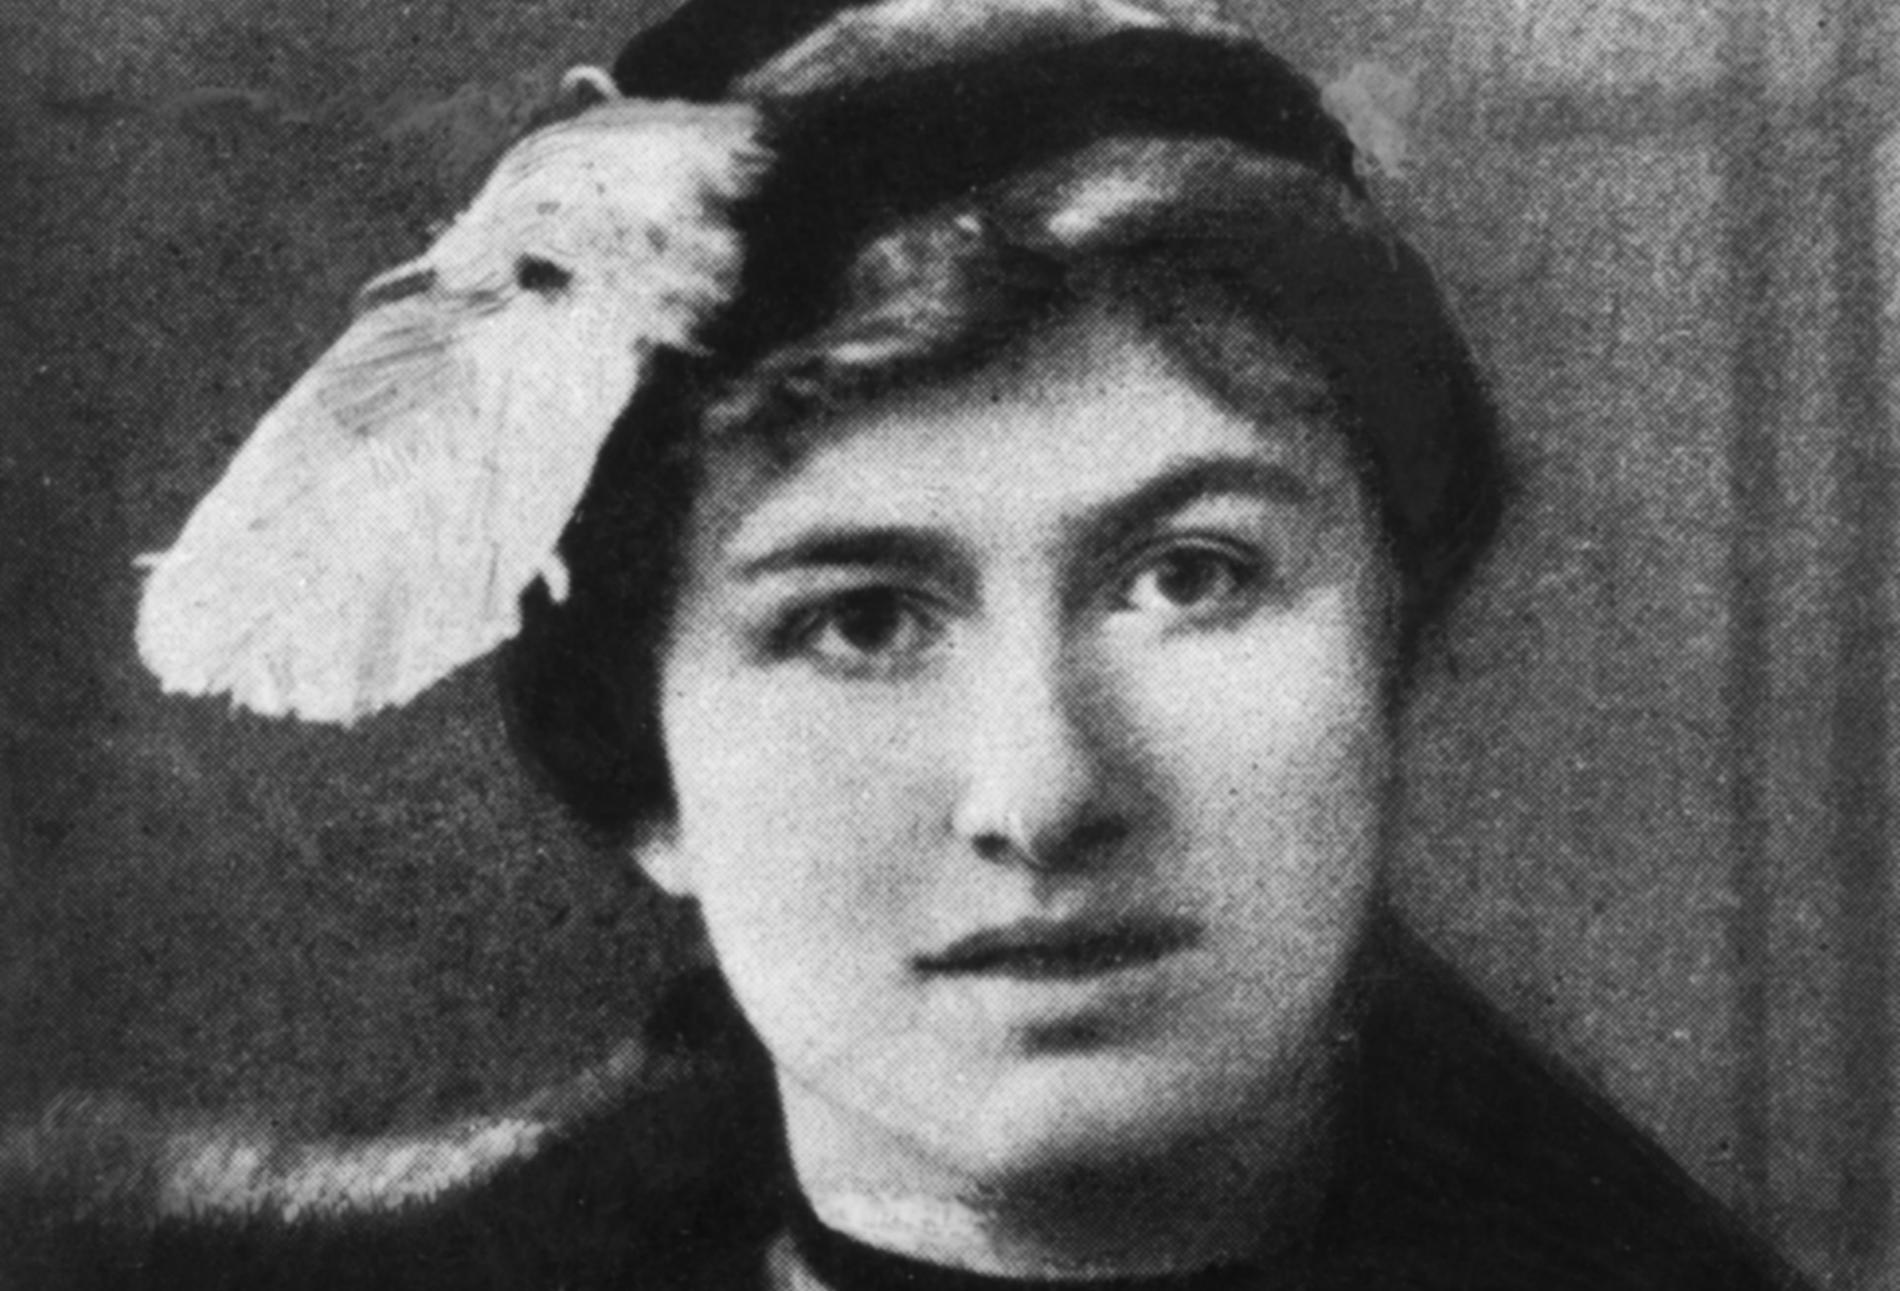 Det är 100 år sedan poeten Edith Södergran dog. Flera böcker om henne har kommit ut i år.